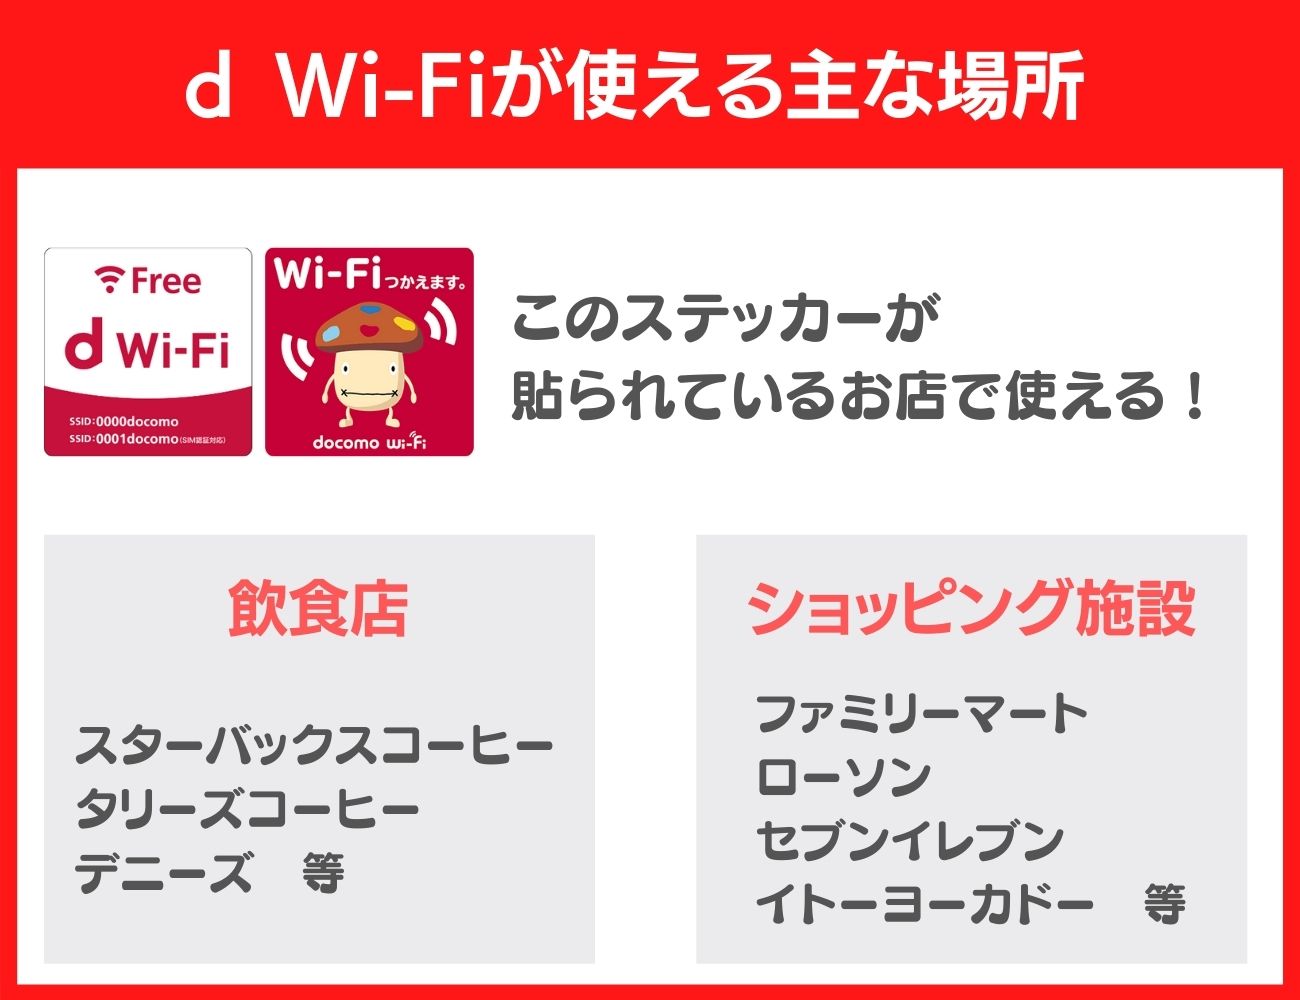 d Wi-Fiが使える主な場所